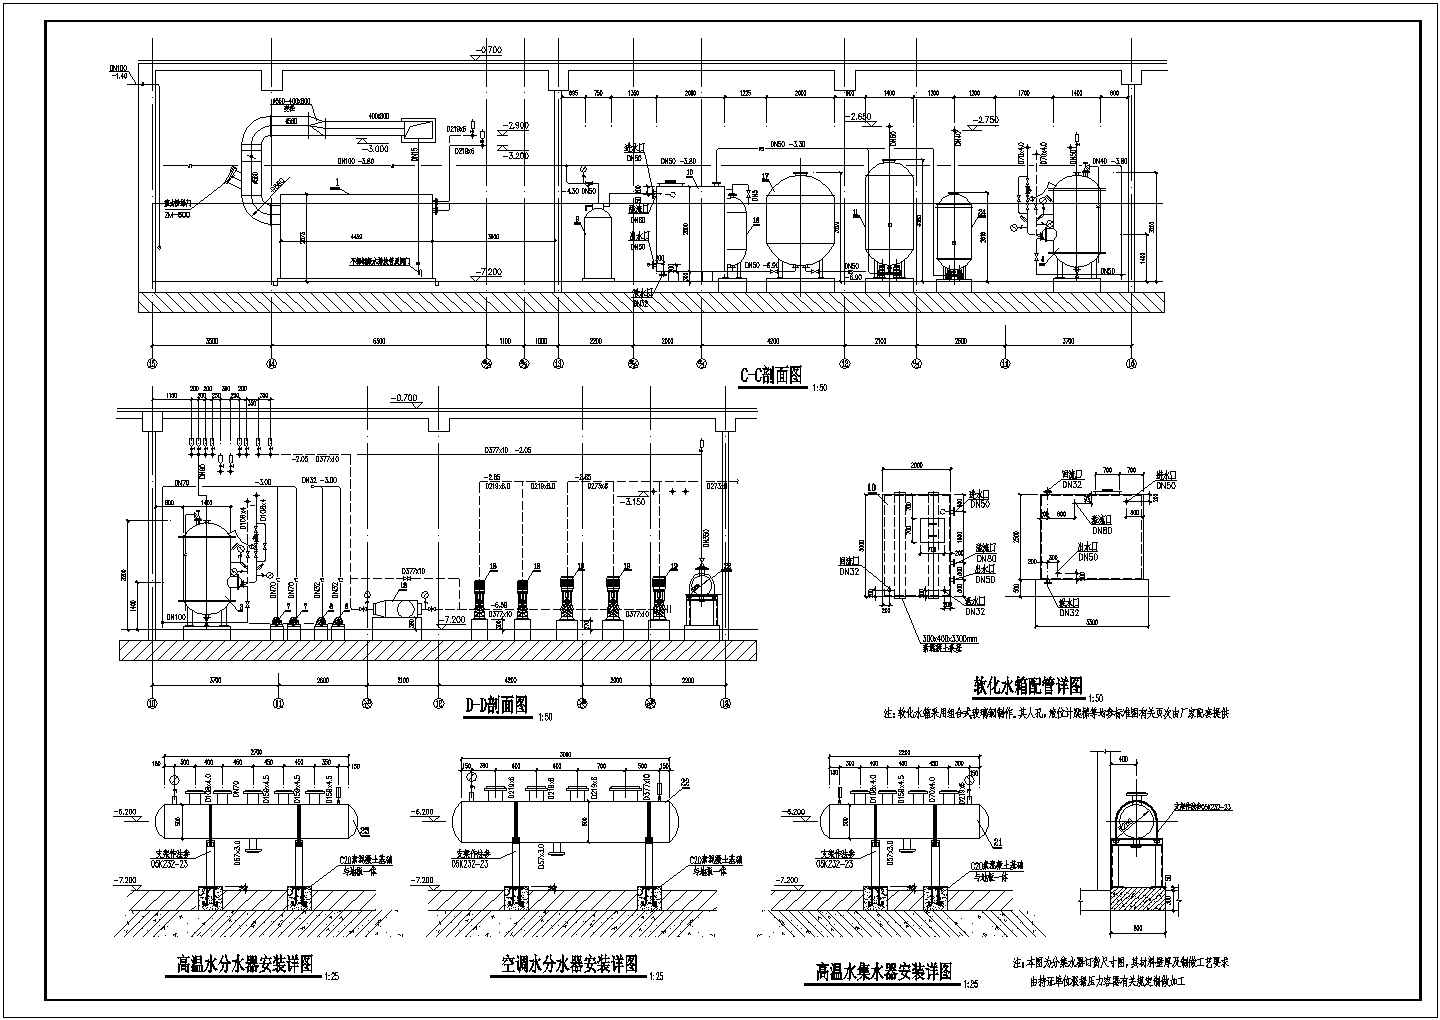 北京大型商业综合体供热锅炉房设计施工图